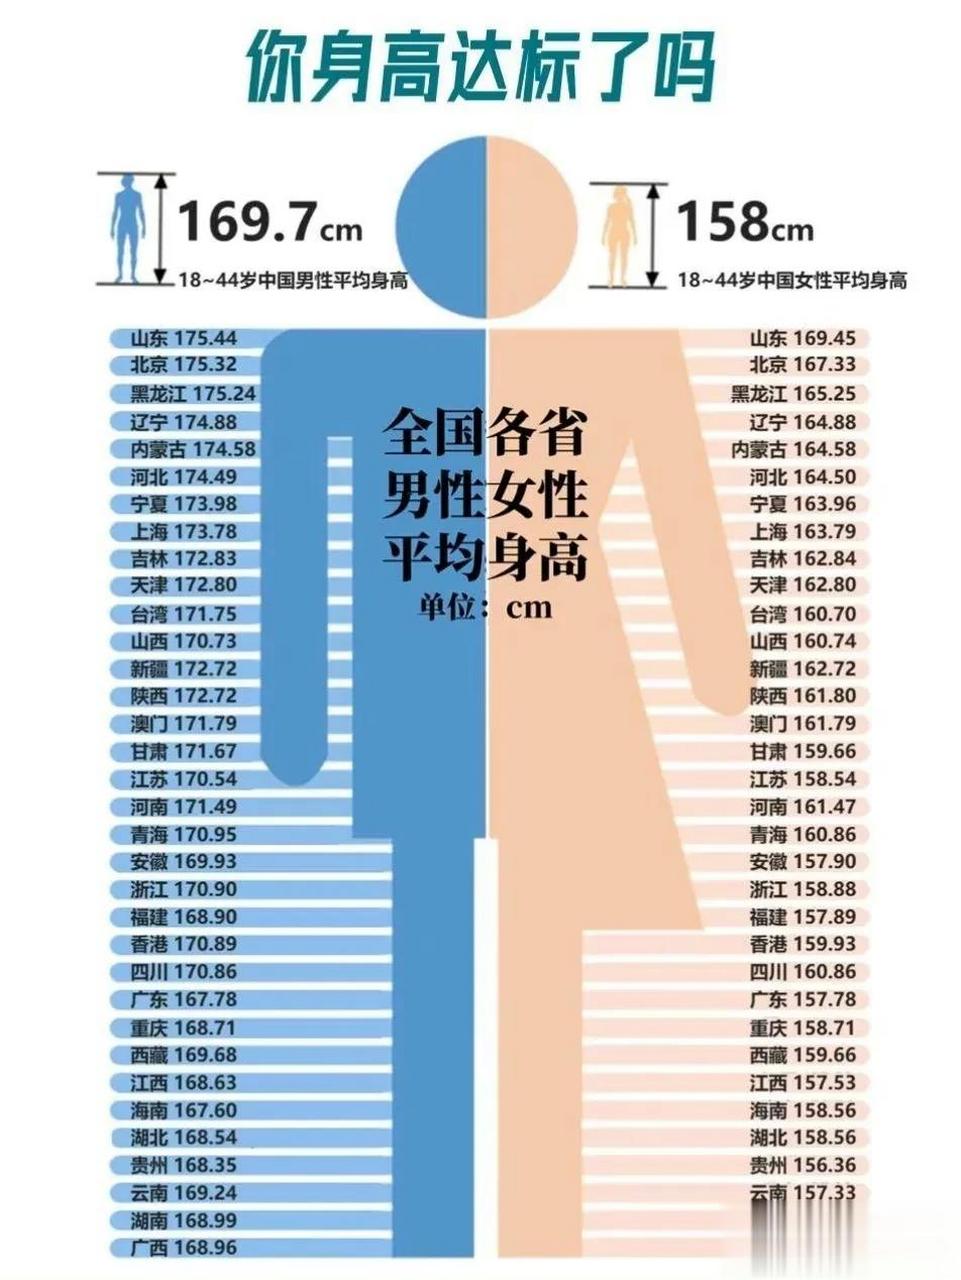 中国人身高排名图片